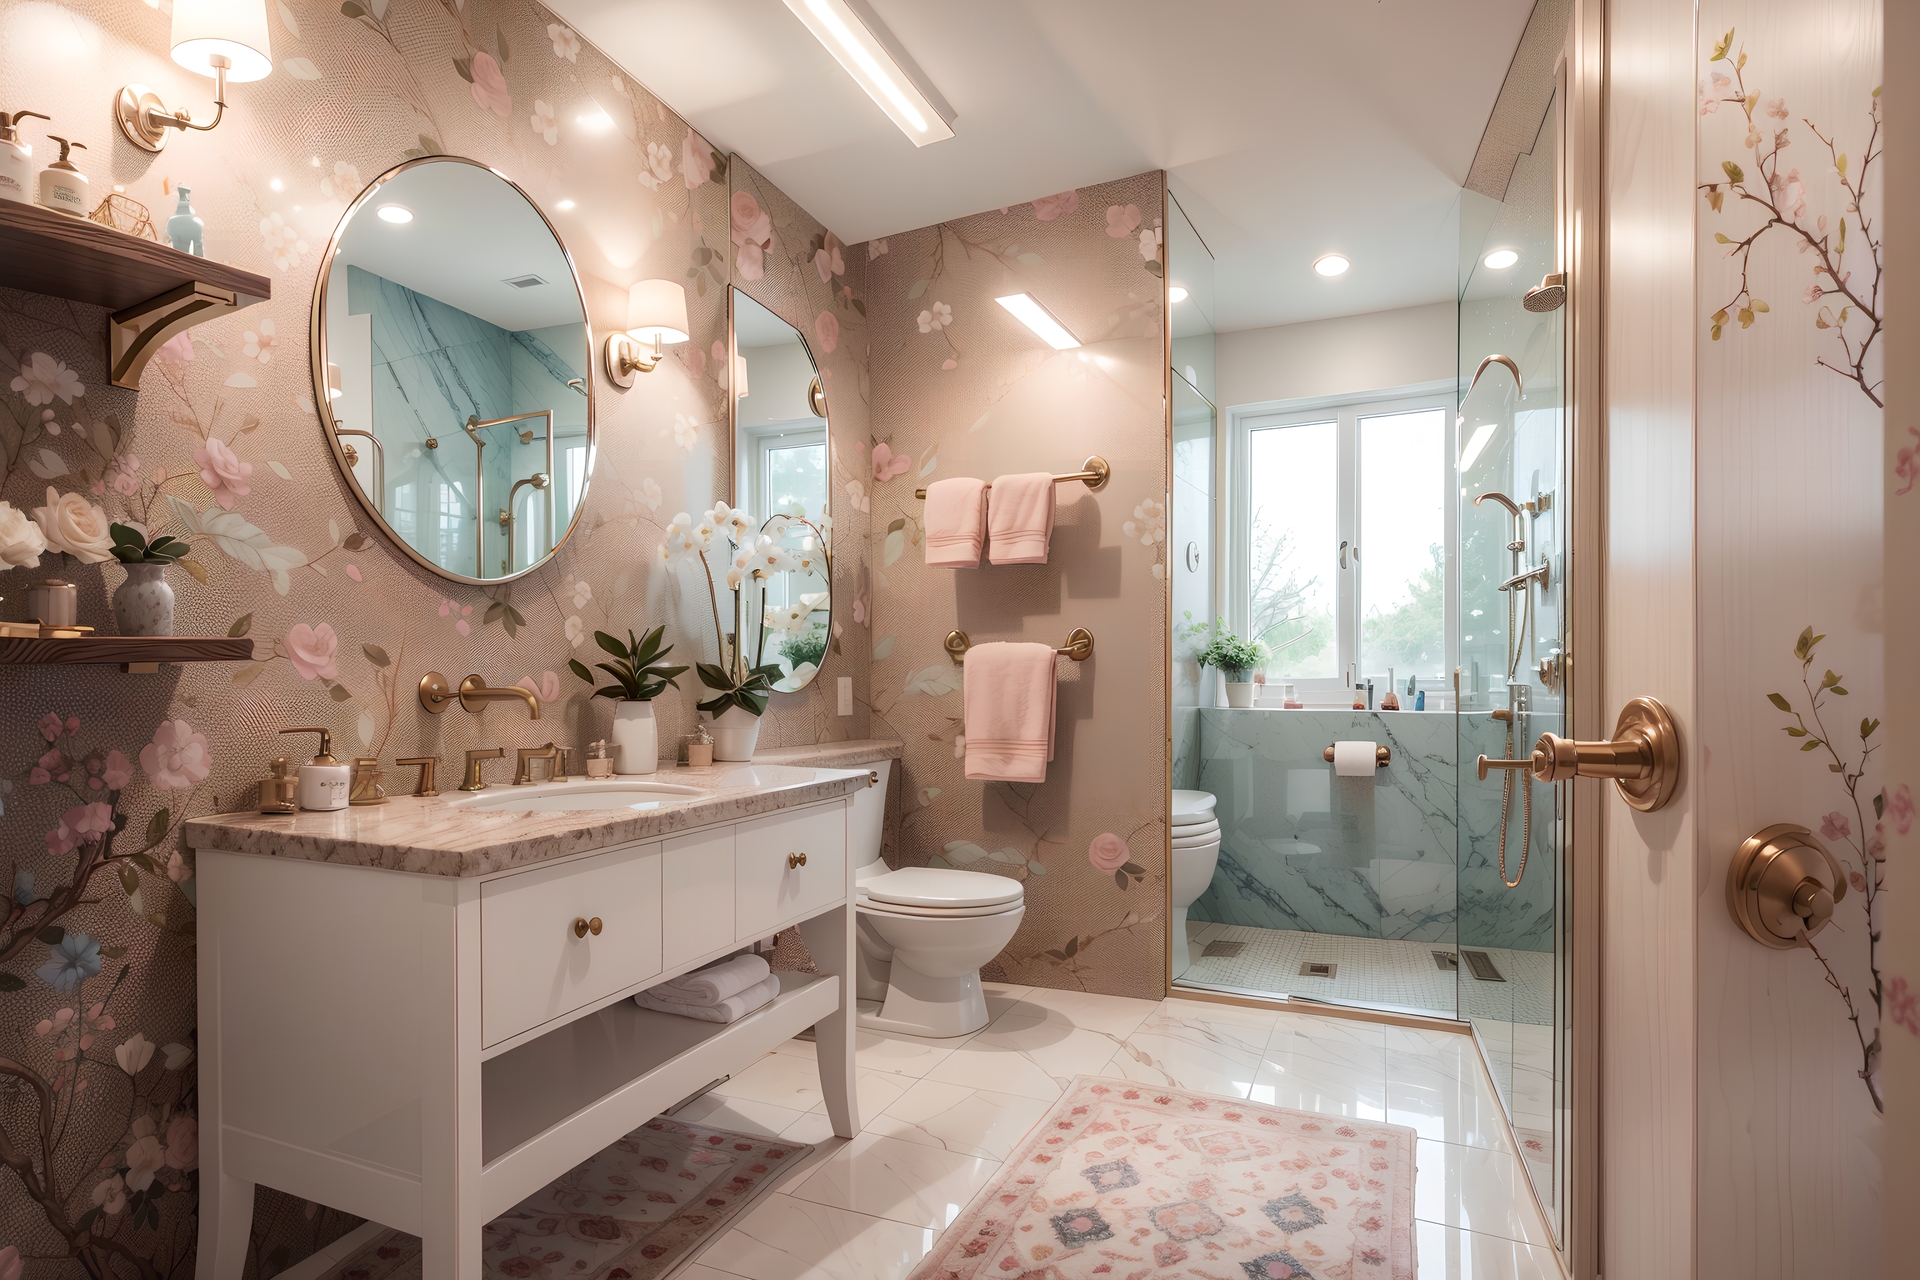 Łazienka z różową tapetą w kwiaty, tworzącą delikatną i romantyczną atmosferę